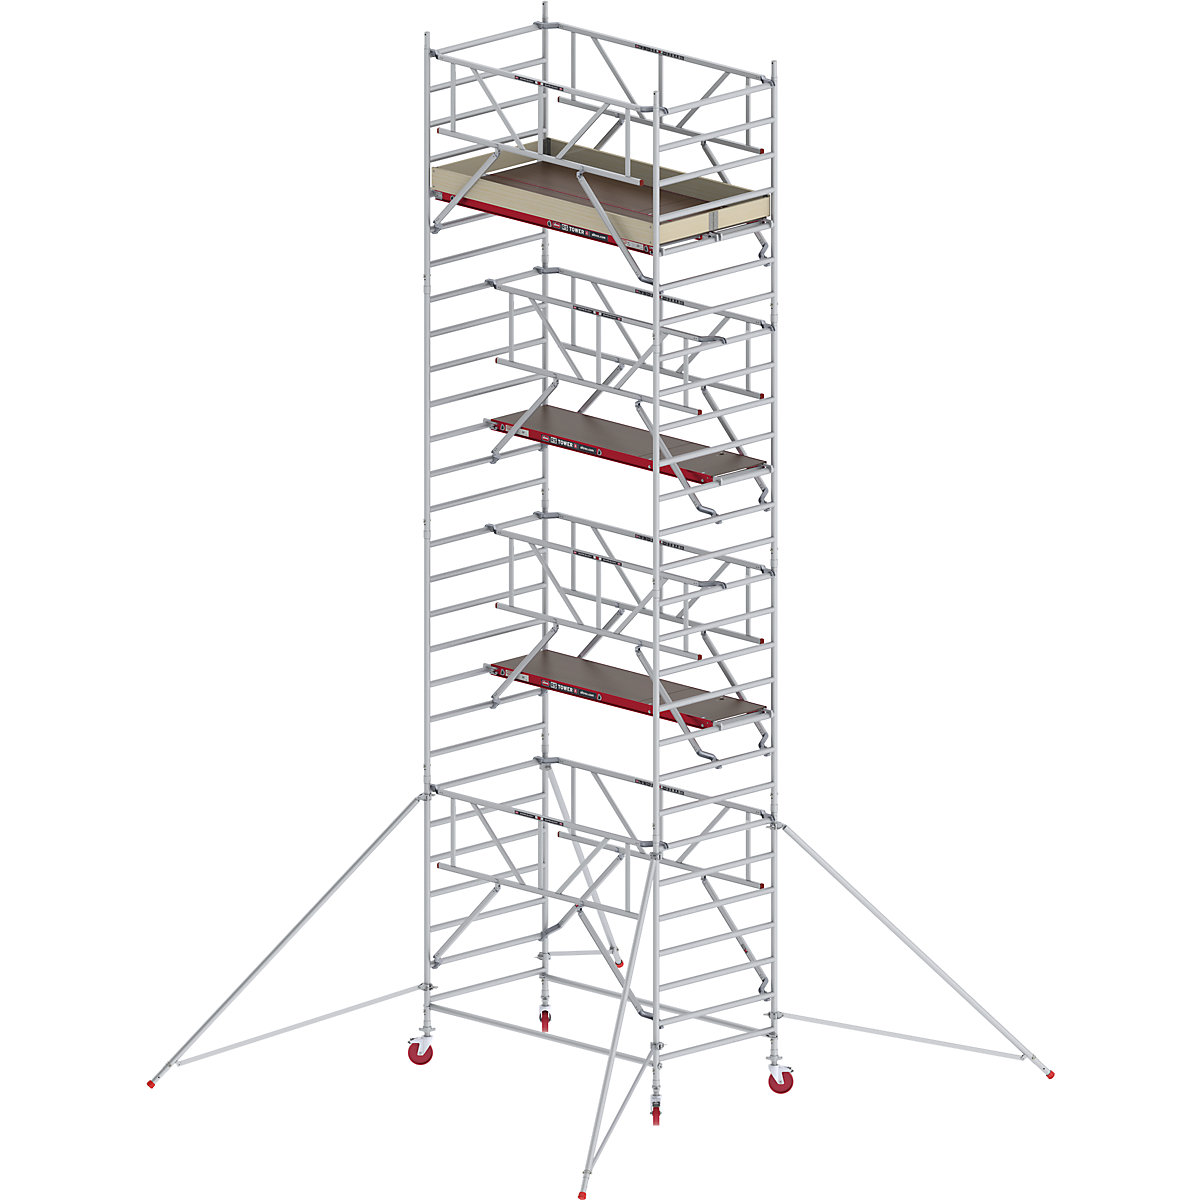 Schelă mobilă RS TOWER 42 lată cu Safe-Quick® – Altrex, platformă din lemn, lungime 2,45 m, înălțime de lucru 9,20 m-9